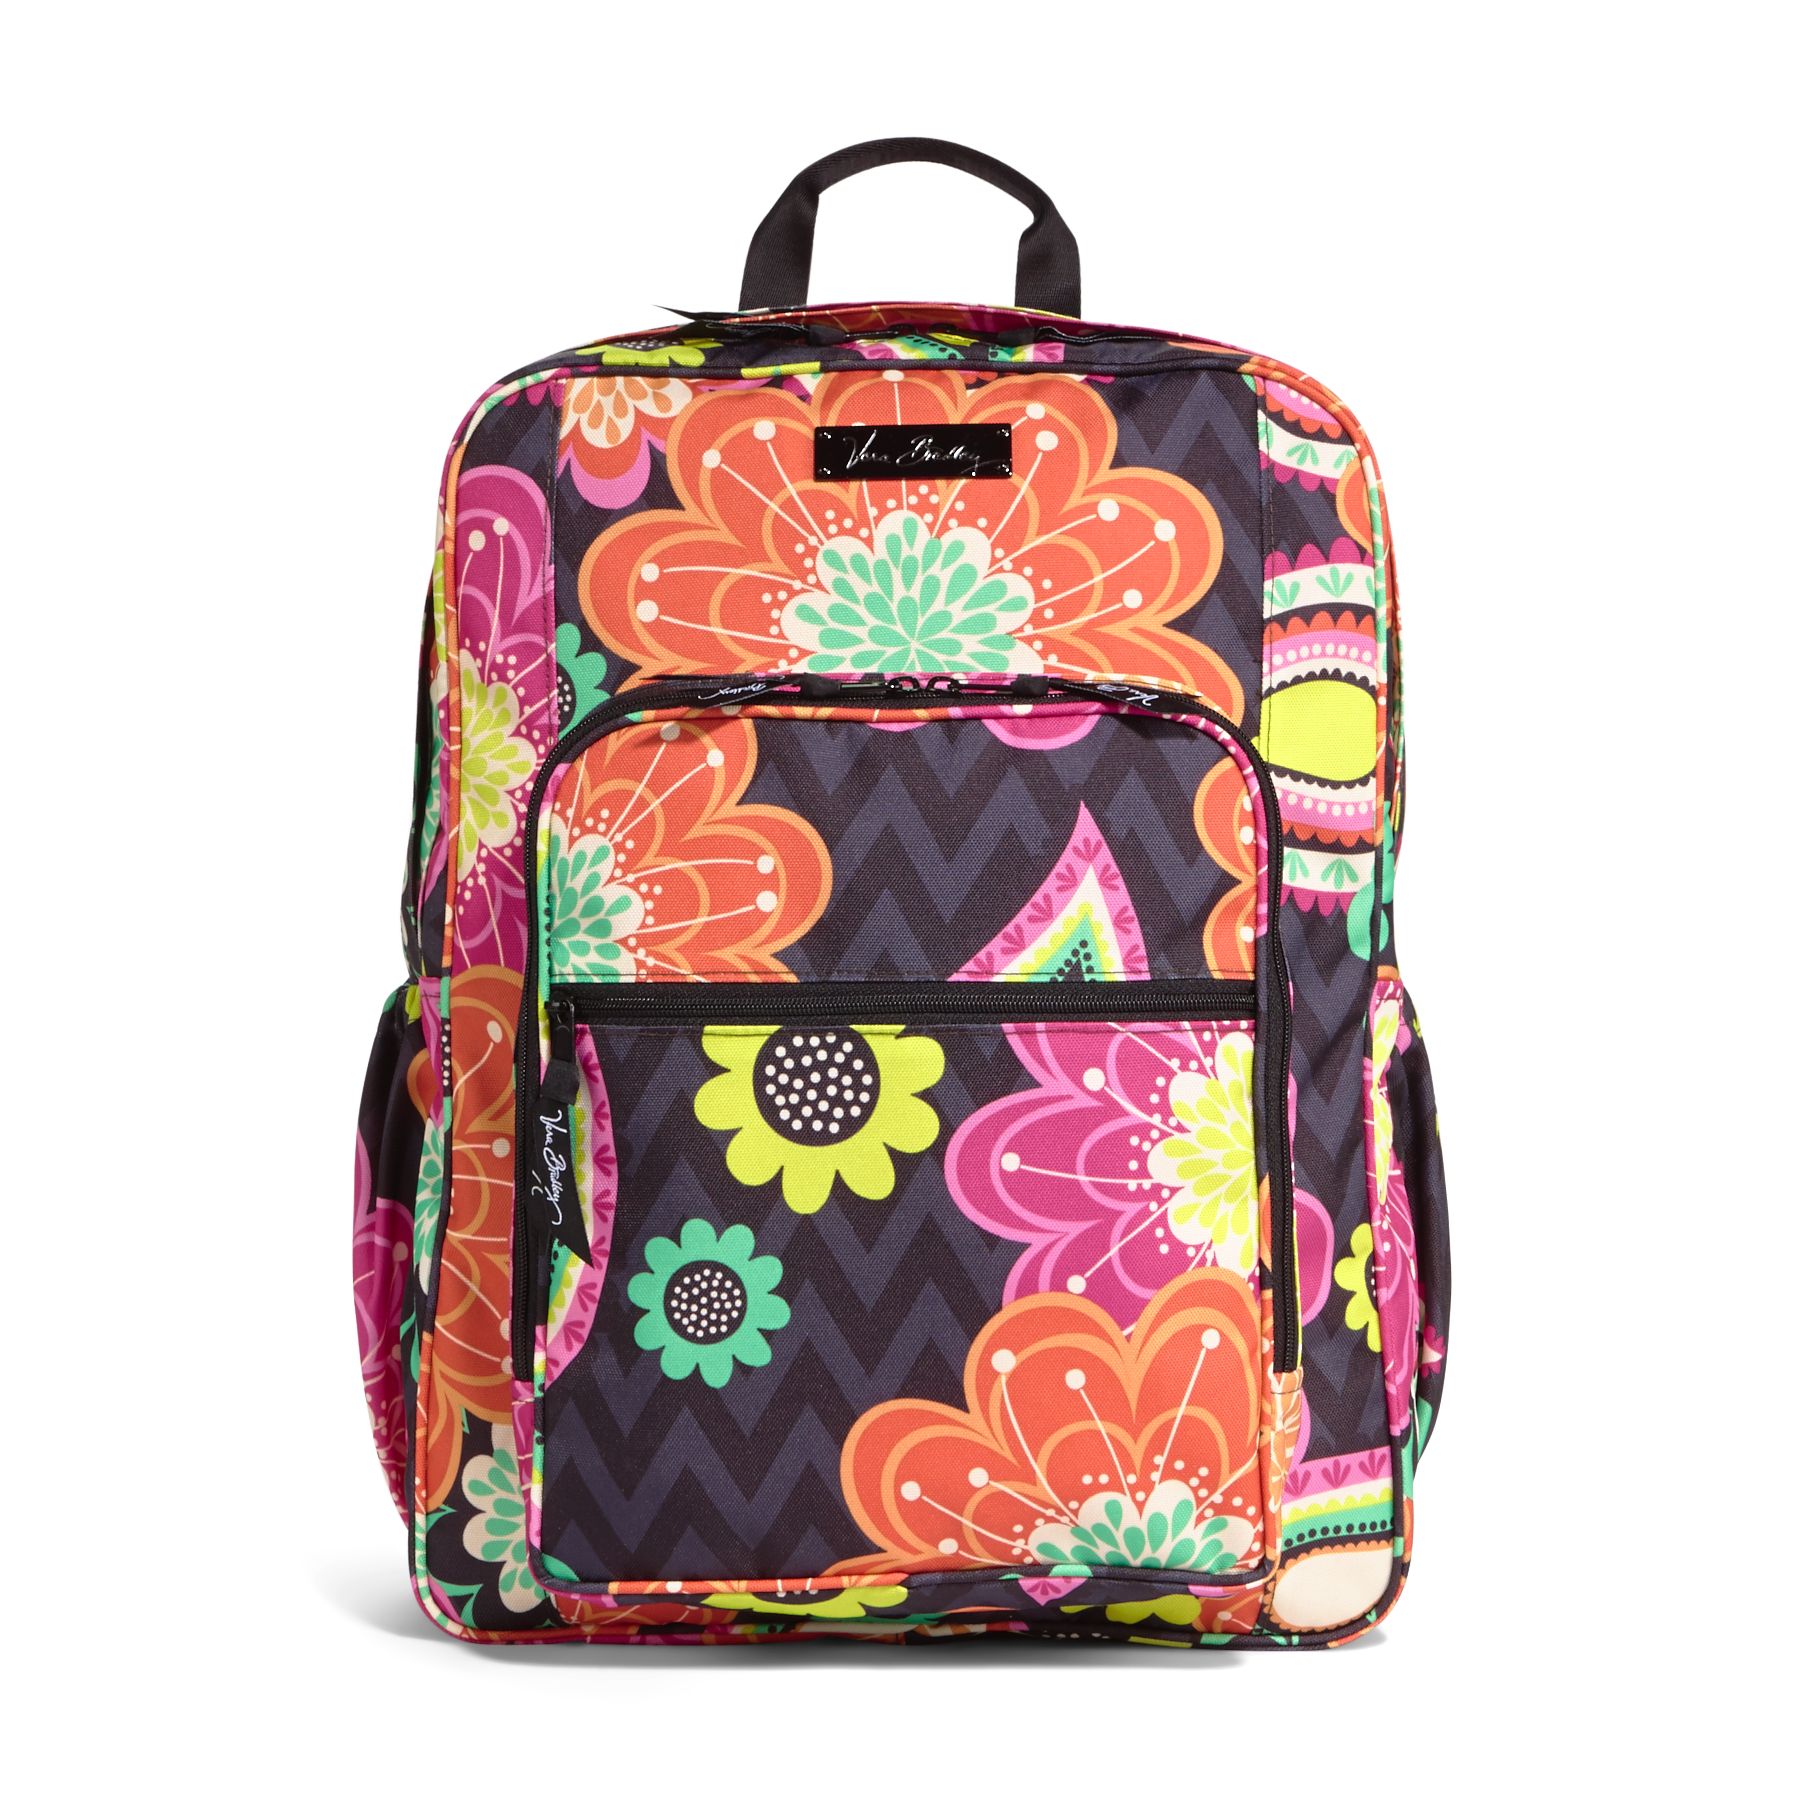 Vera Bradley Lighten Up Large Backpack | eBay